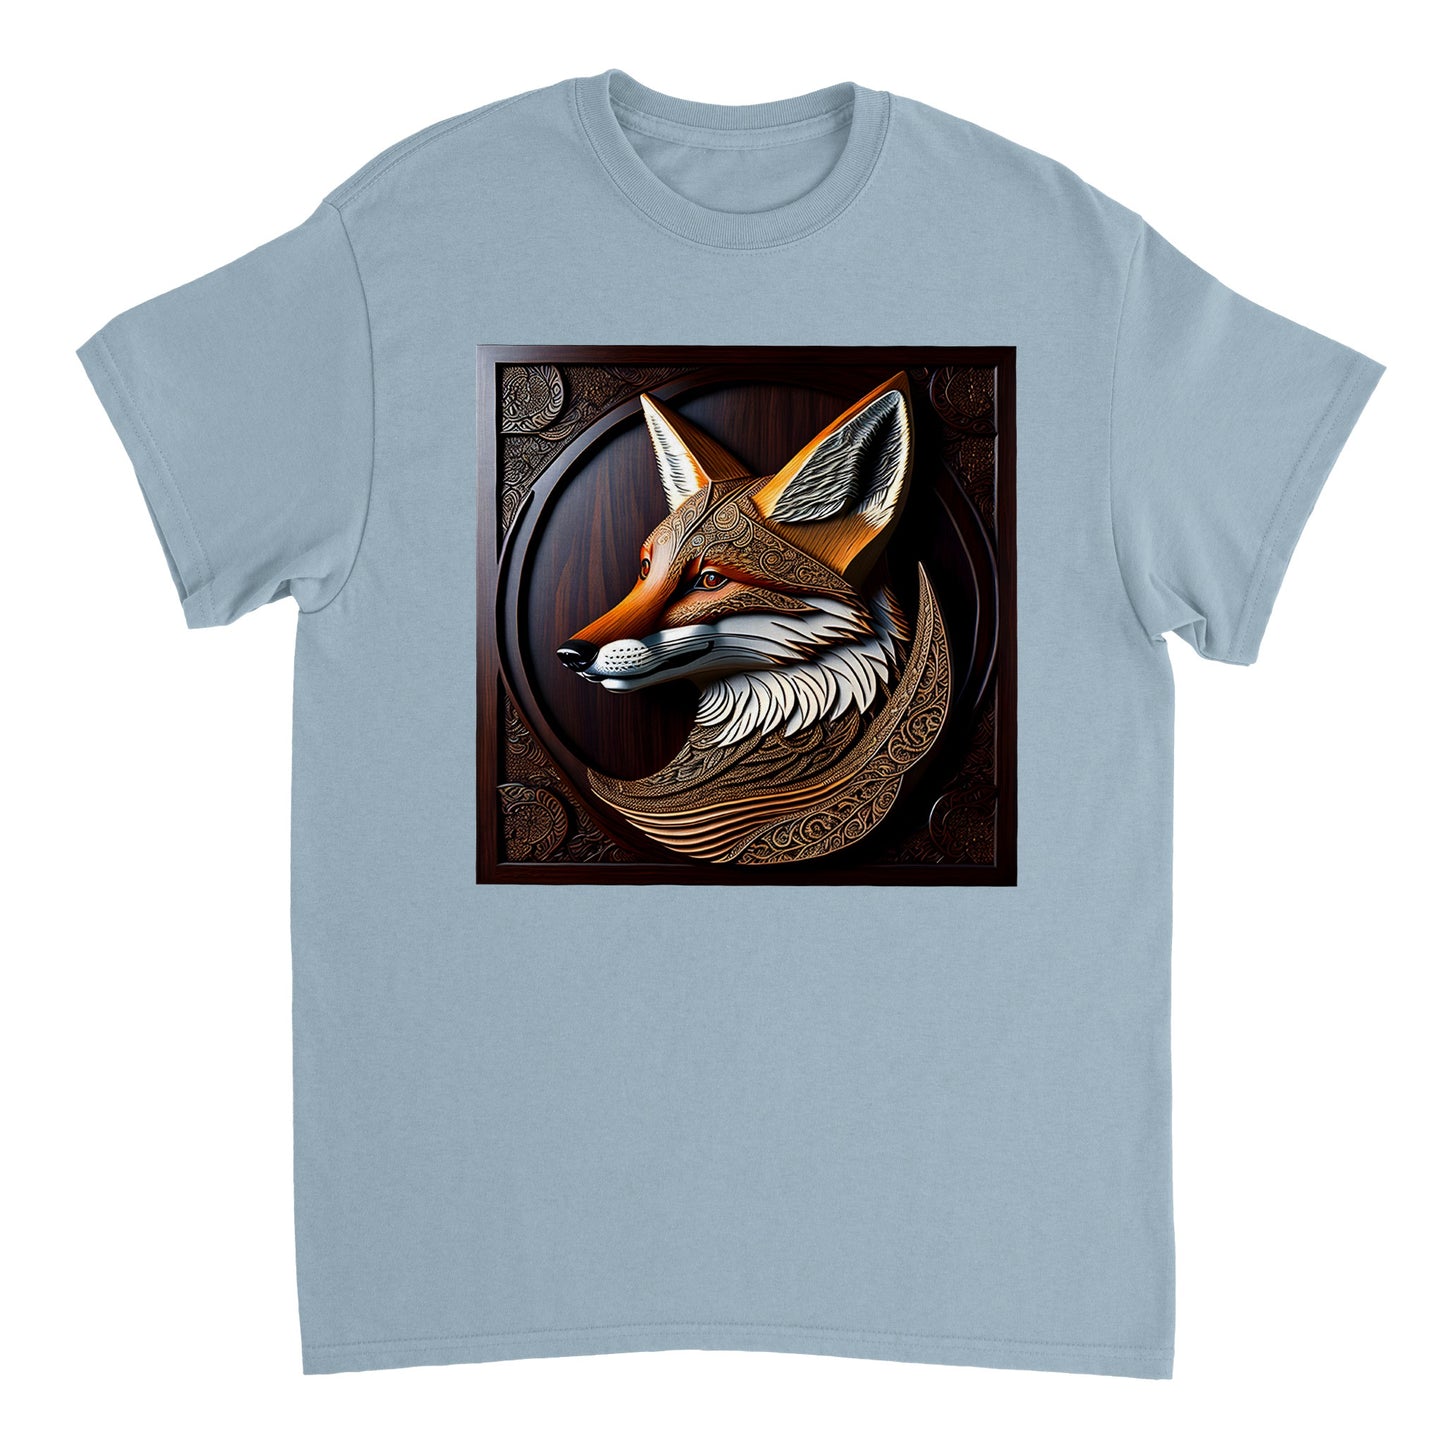 3D Wooden Animal Art - Heavyweight Unisex Crewneck T-shirt 89